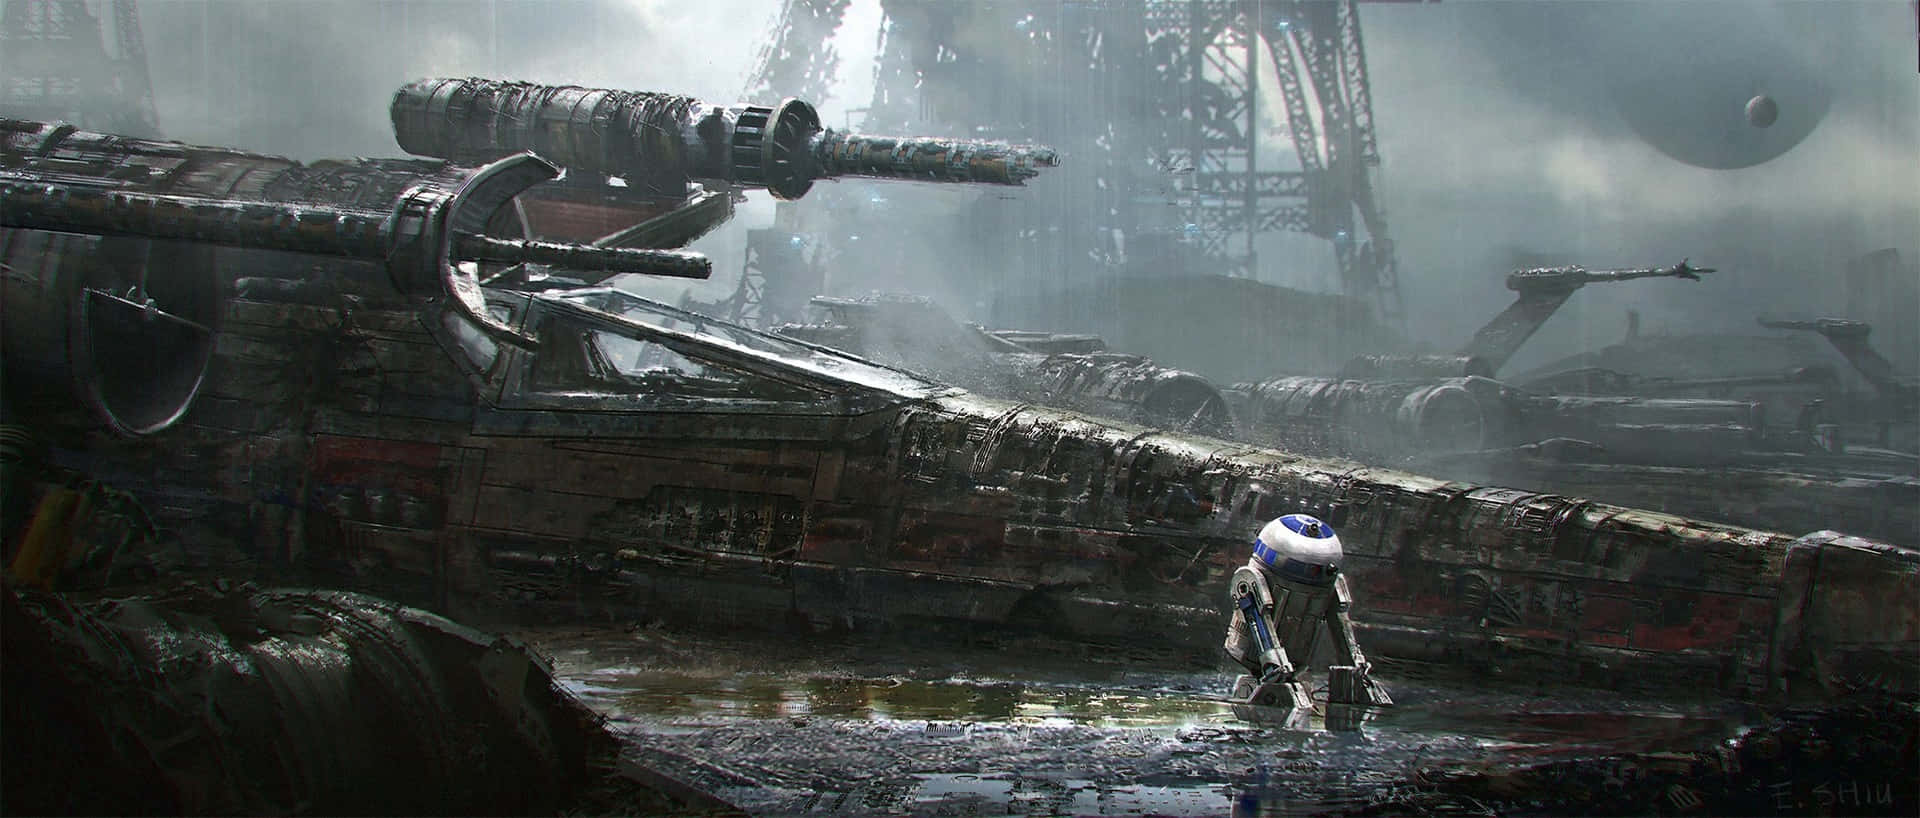 Ennärbild På R2-d2 Från Star Wars-filmerna. Wallpaper